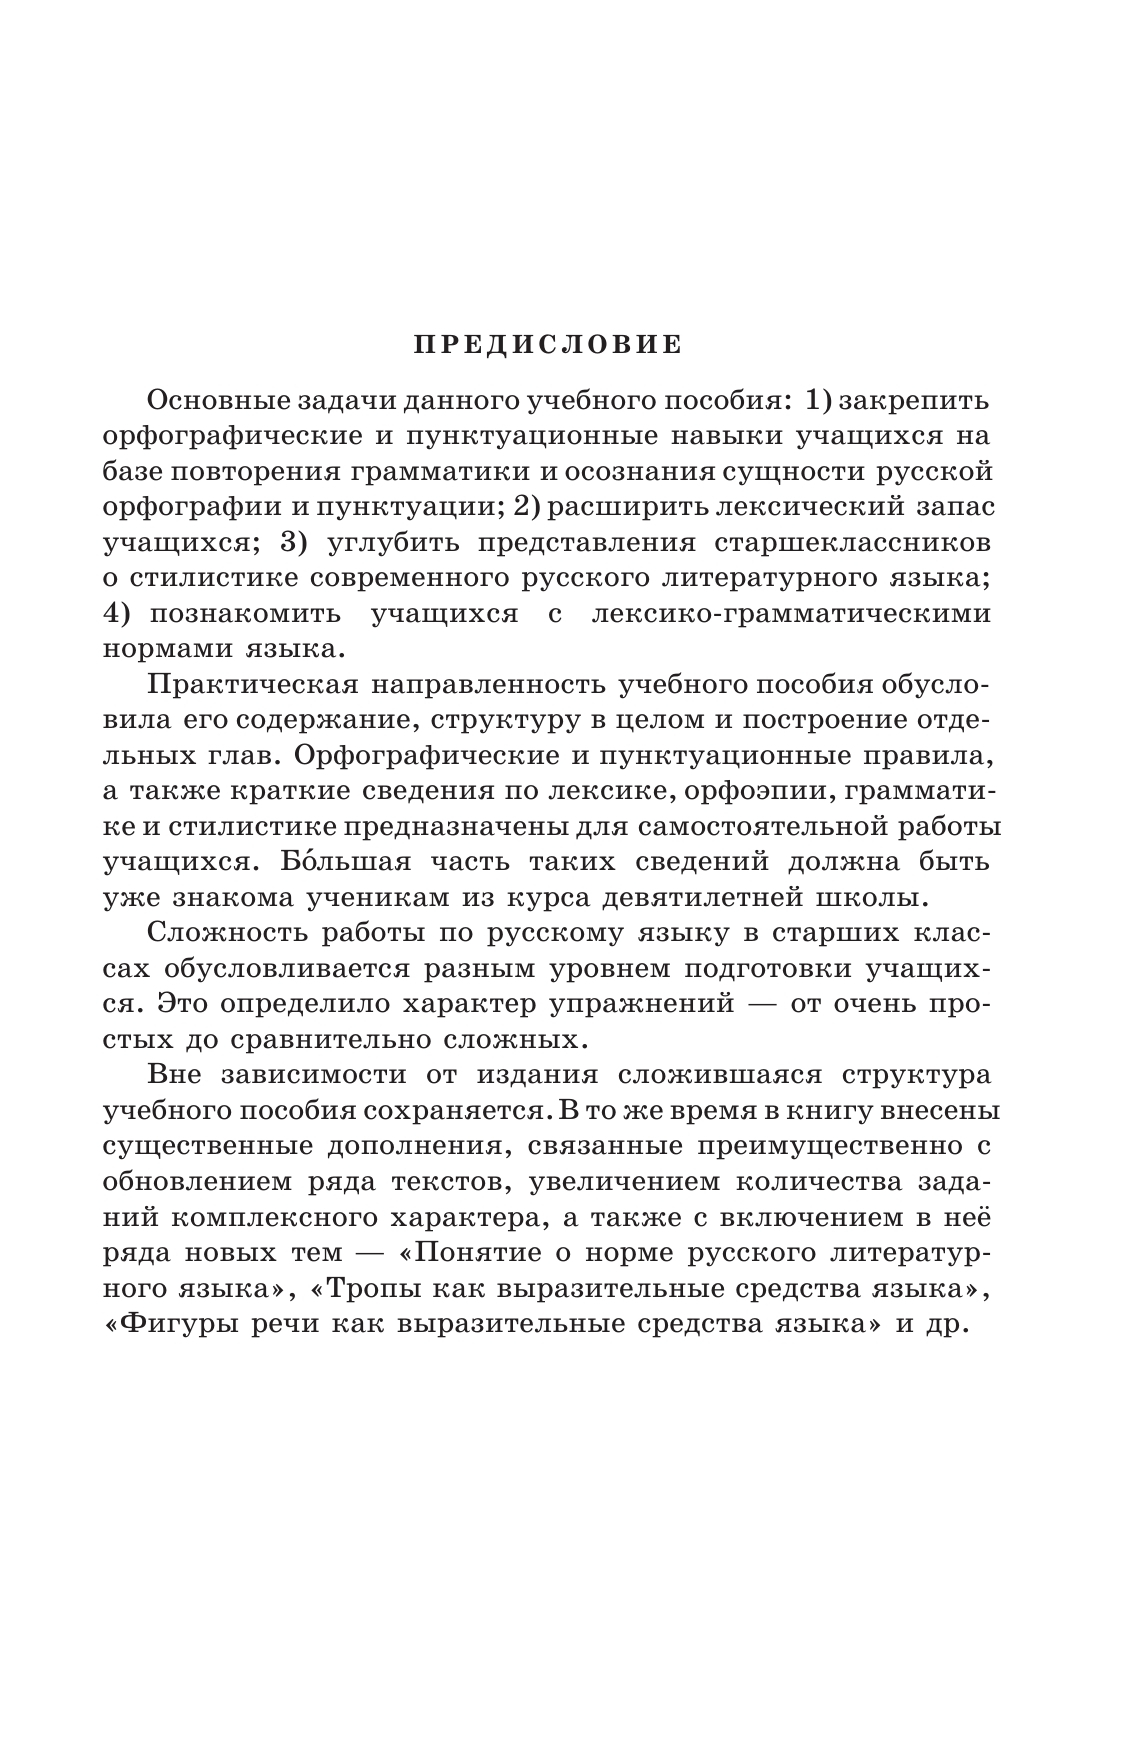 Русский язык. 10-11 классы. Учебное пособие 4